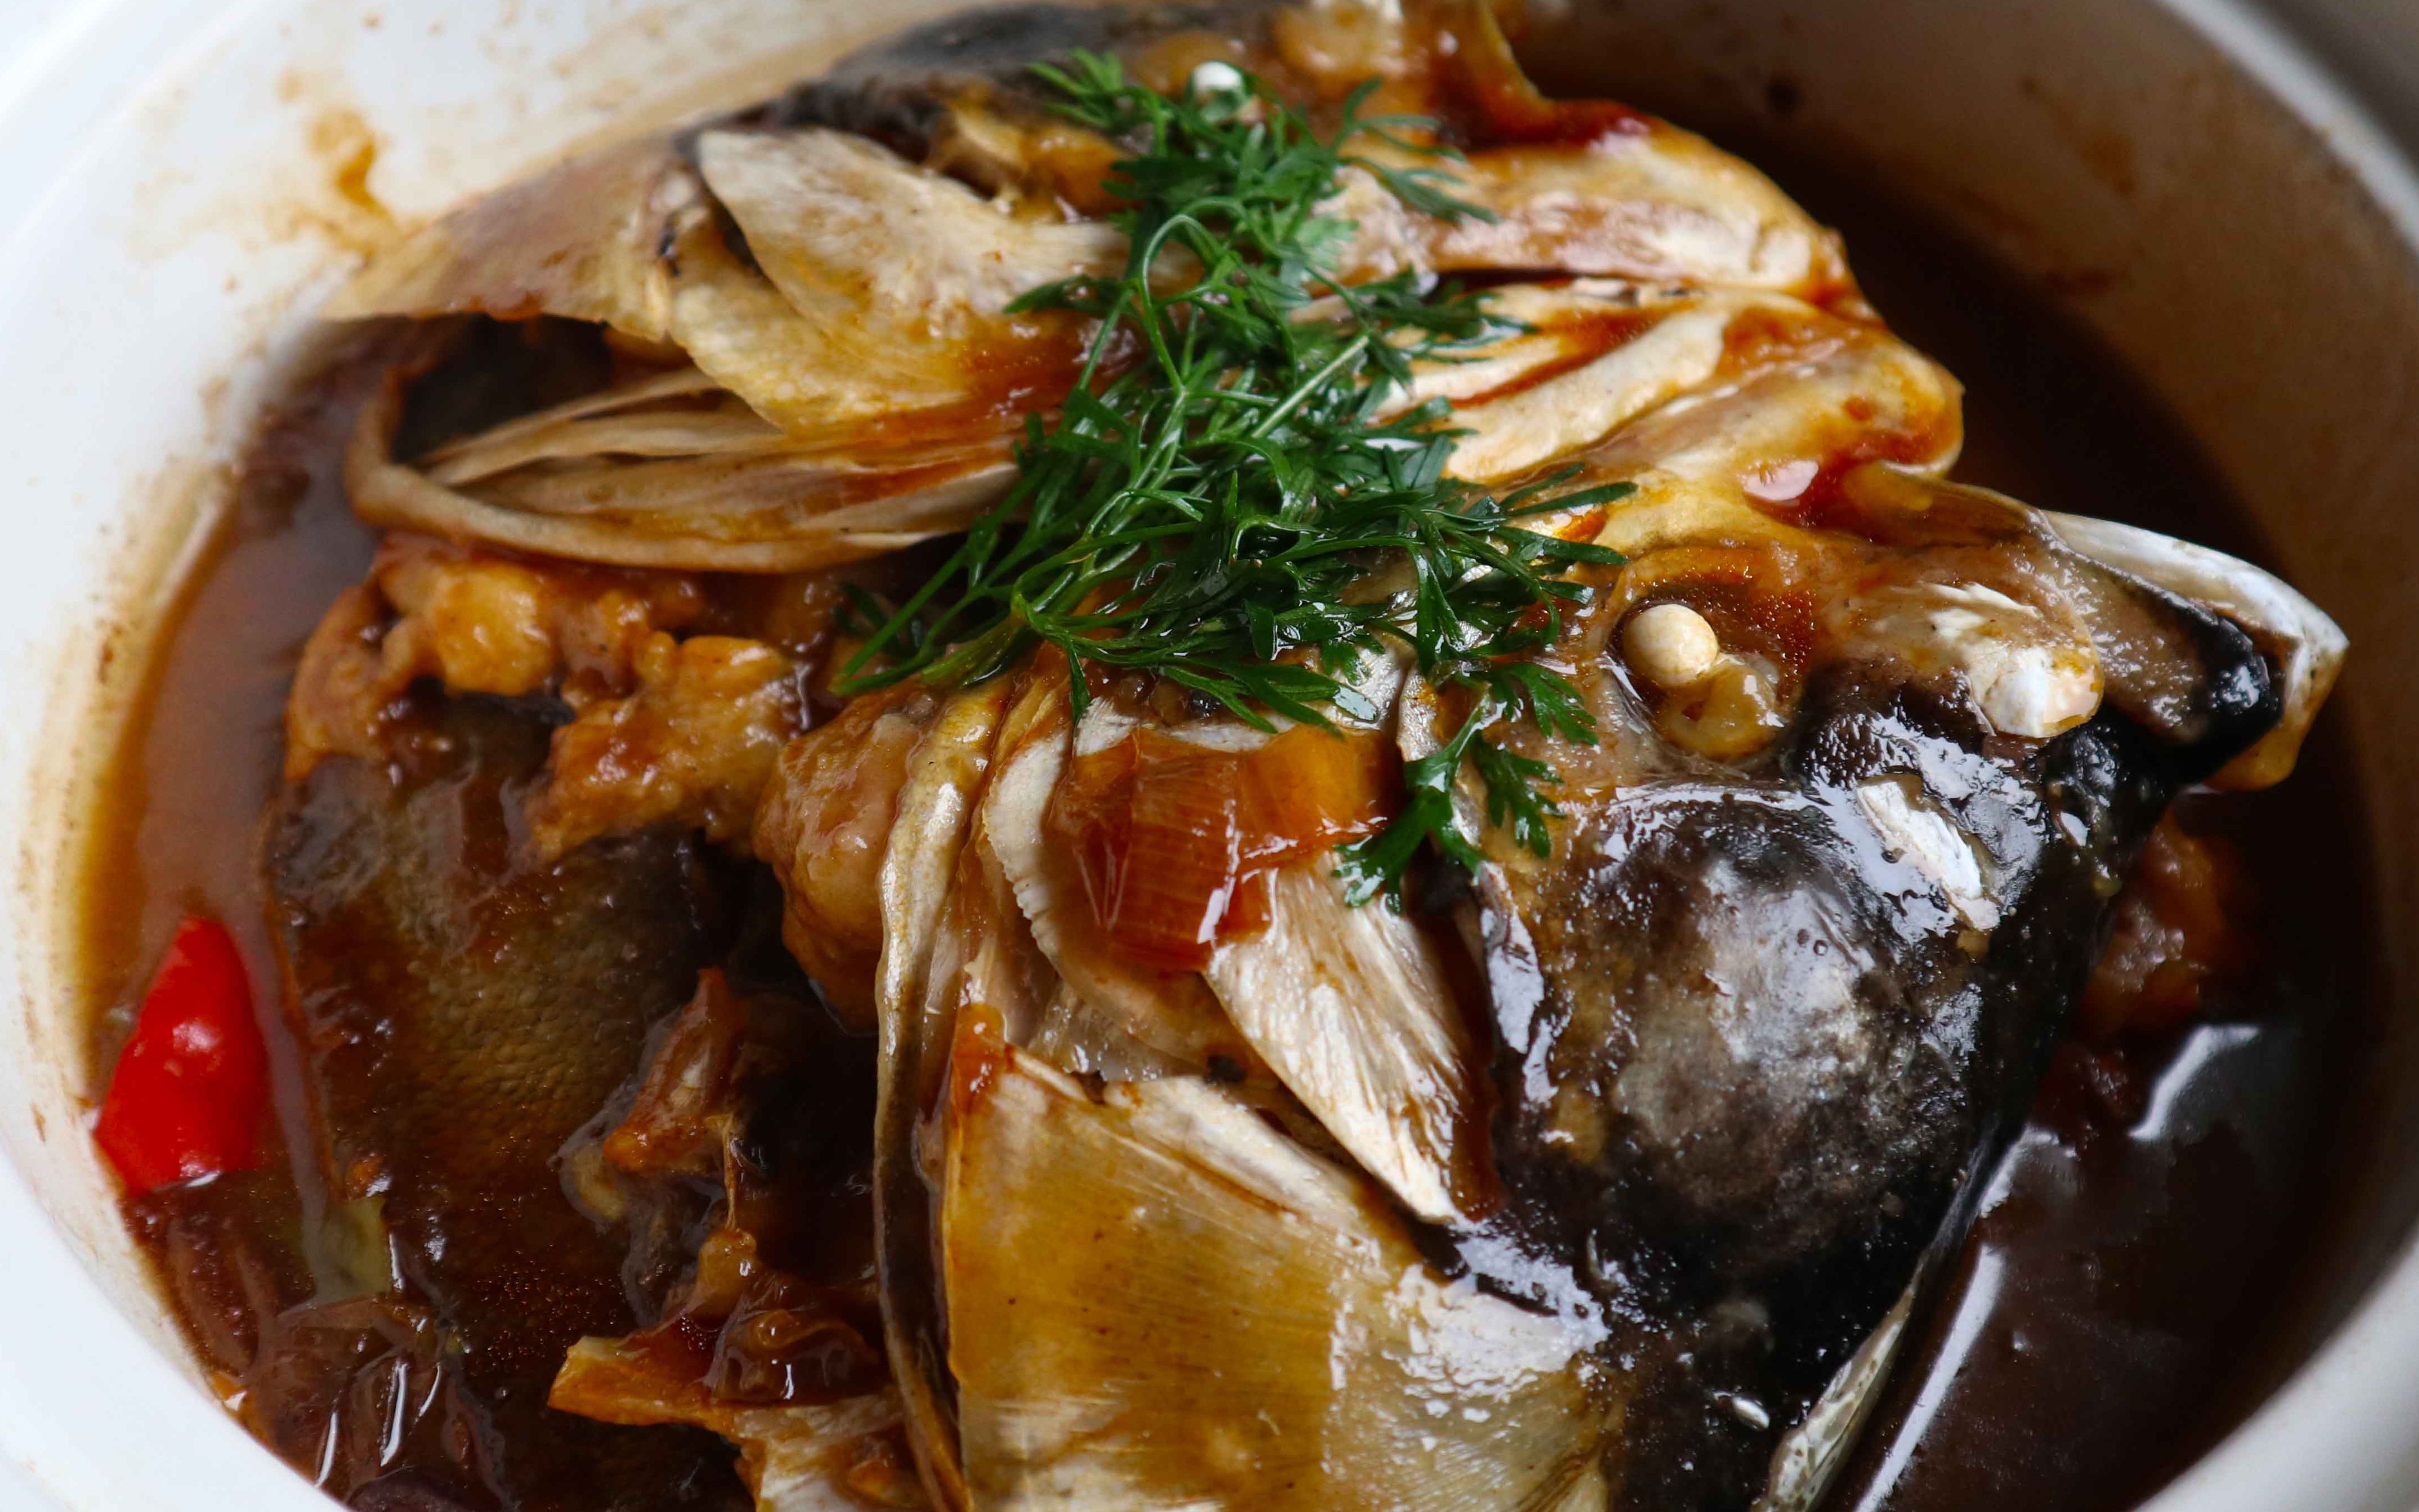 暖和煲仔菜豉香腐竹鱼煲(2)的家常做法 - 煲汤食谱网